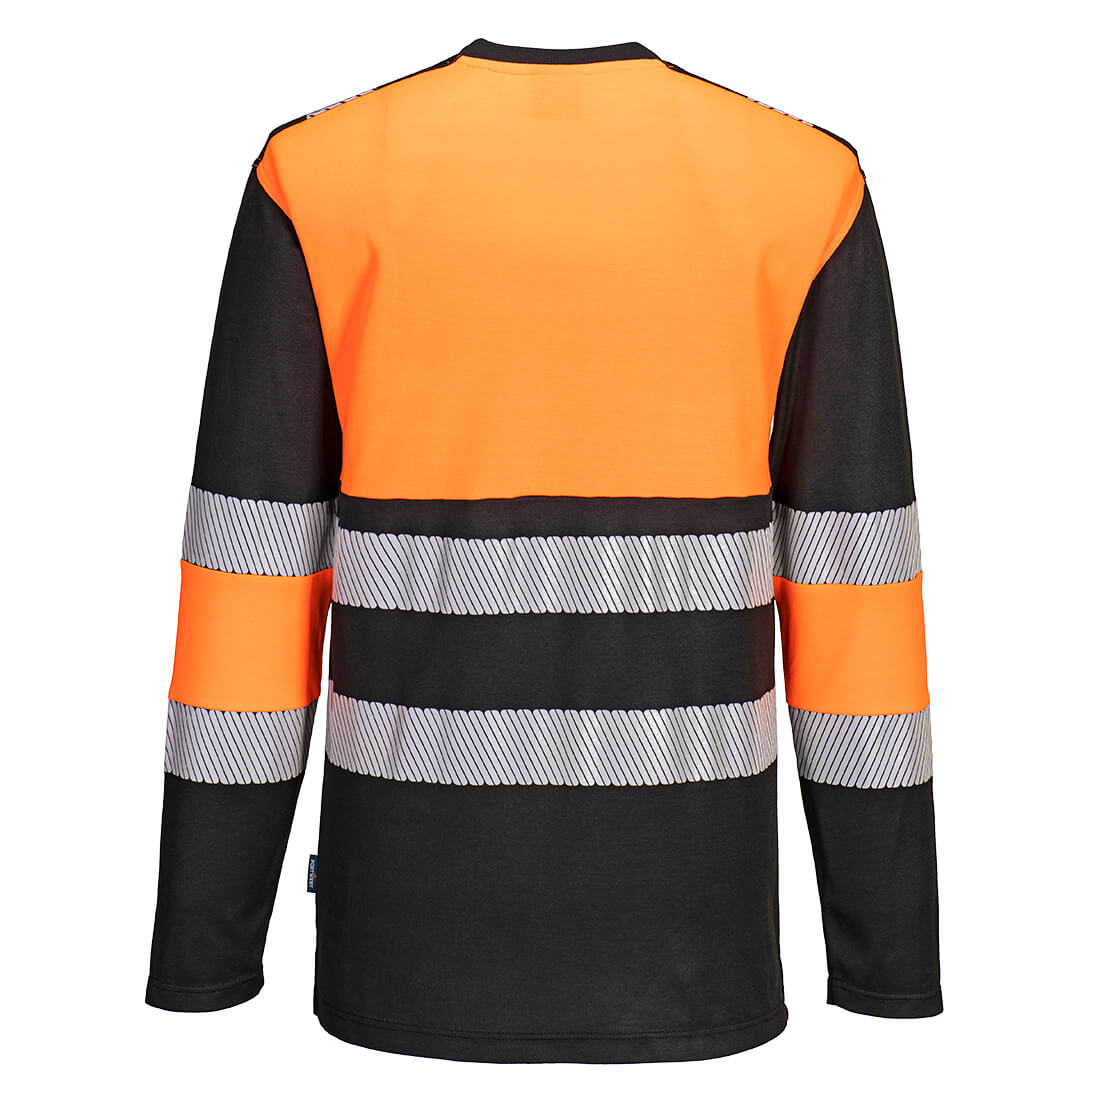 Portwest PW312 Hi-Vis Cotton Comfort Class 1 T-Shirt Orange/Black